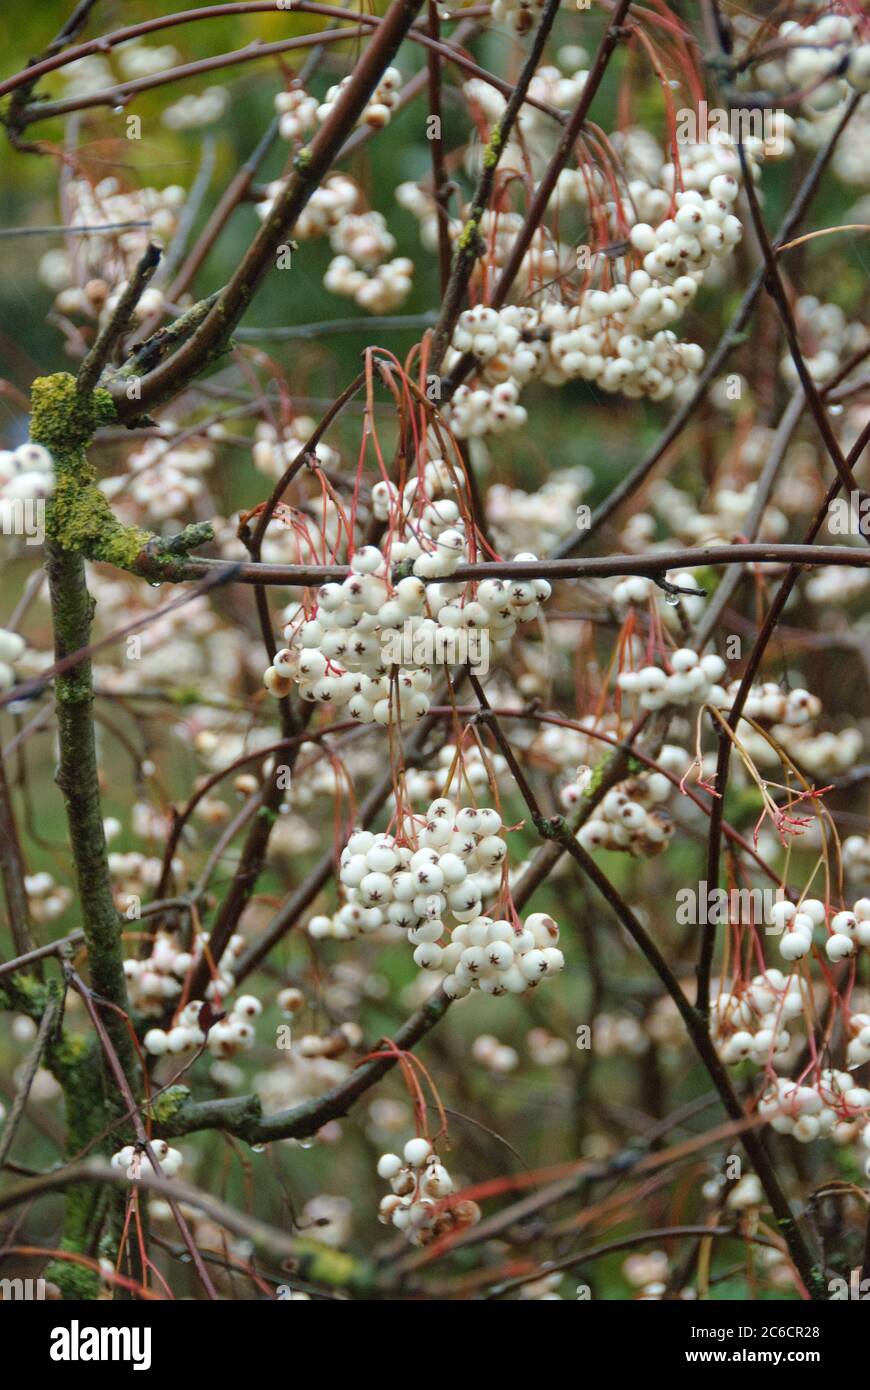 Weissfruechtige Eberesche, Sorbus koehneana, Weissfruechtige mountain ash, Sorbus koehneana Stock Photo